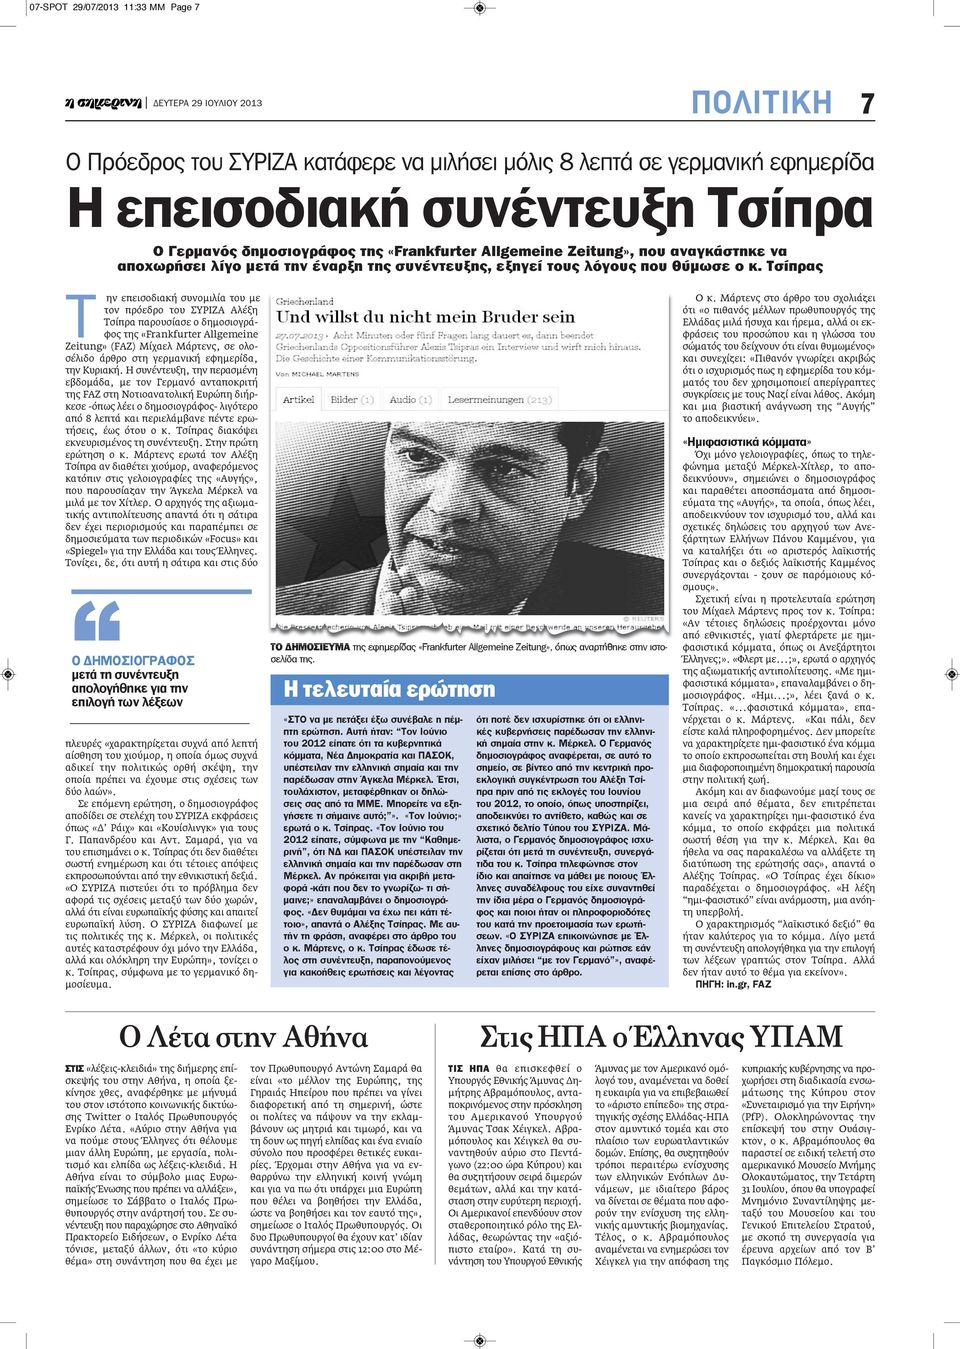 Τσίπρας Τ ην επεισοδιακή συνομιλία του με τον πρόεδρο του ΣΥΡΙΖΑ Αλέξη Τσίπρα παρουσίασε ο δημοσιογράφος της «Frankfurter Allgemeine Zeitung» (FAZ) Μίχαελ Μάρτενς, σε ολοσέλιδο άρθρο στη γερμανική